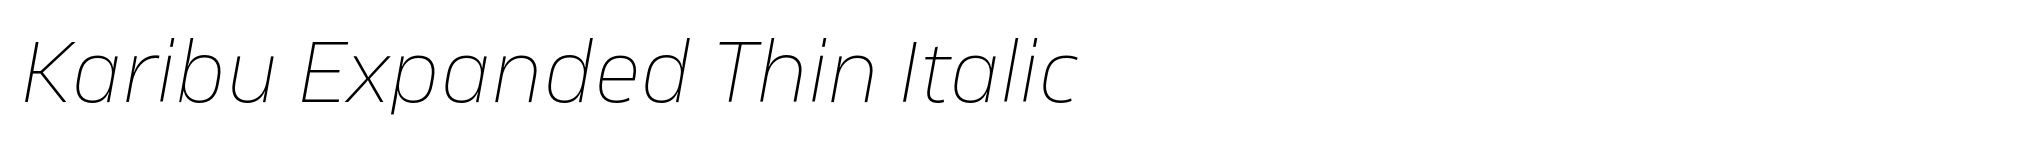 Karibu Expanded Thin Italic image